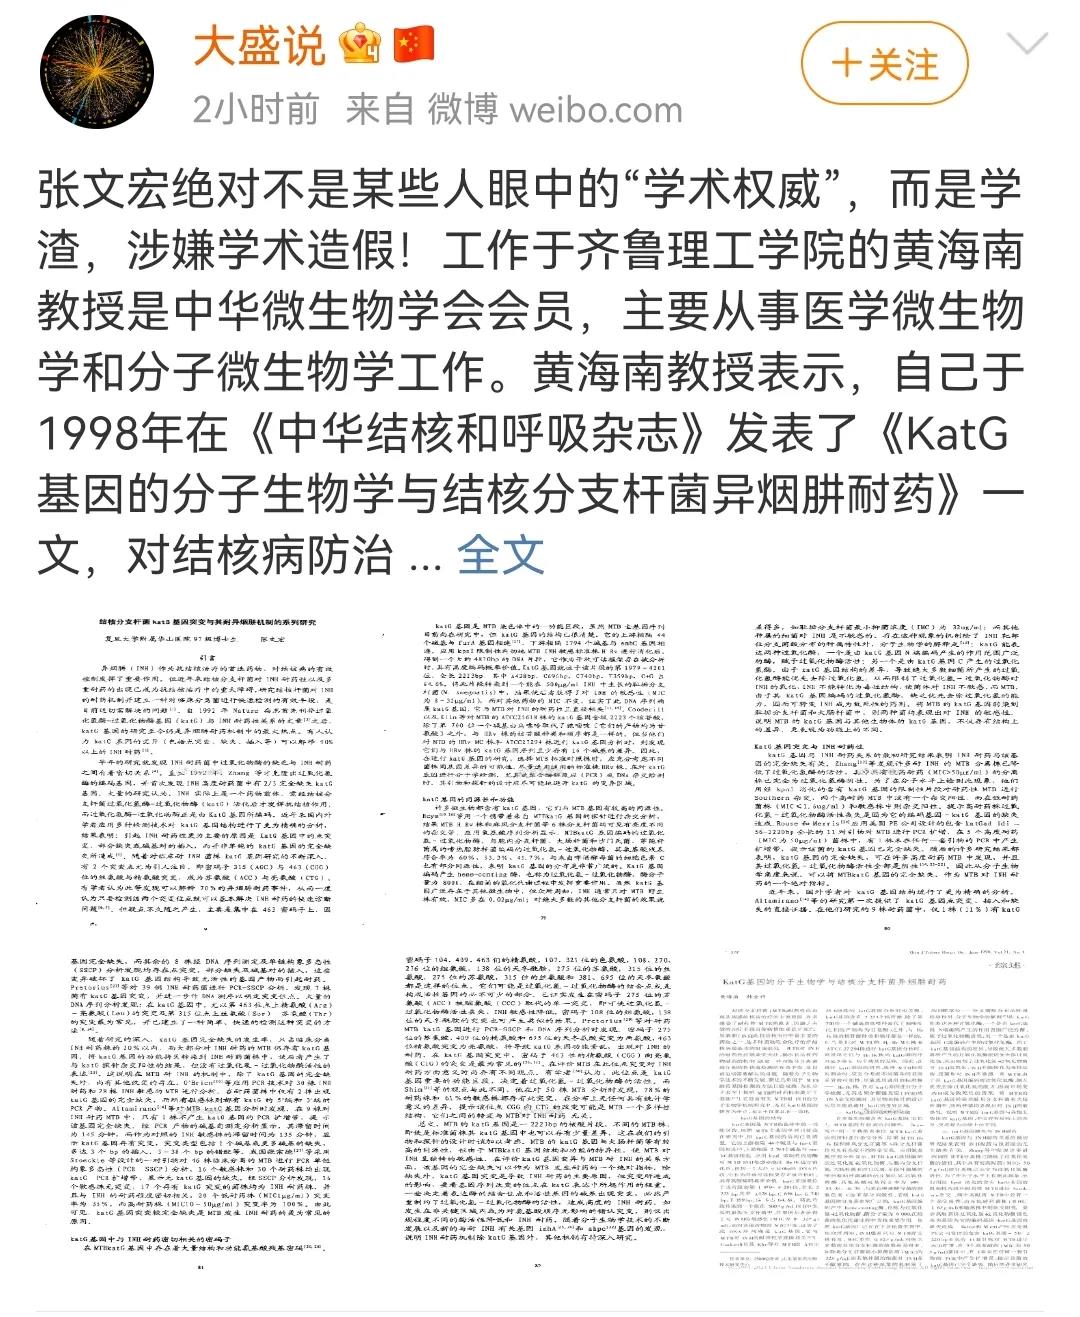 张文宏爆出博士论文抄袭丑闻，抄袭黄海南、韩金祥文章全文仅改了编号